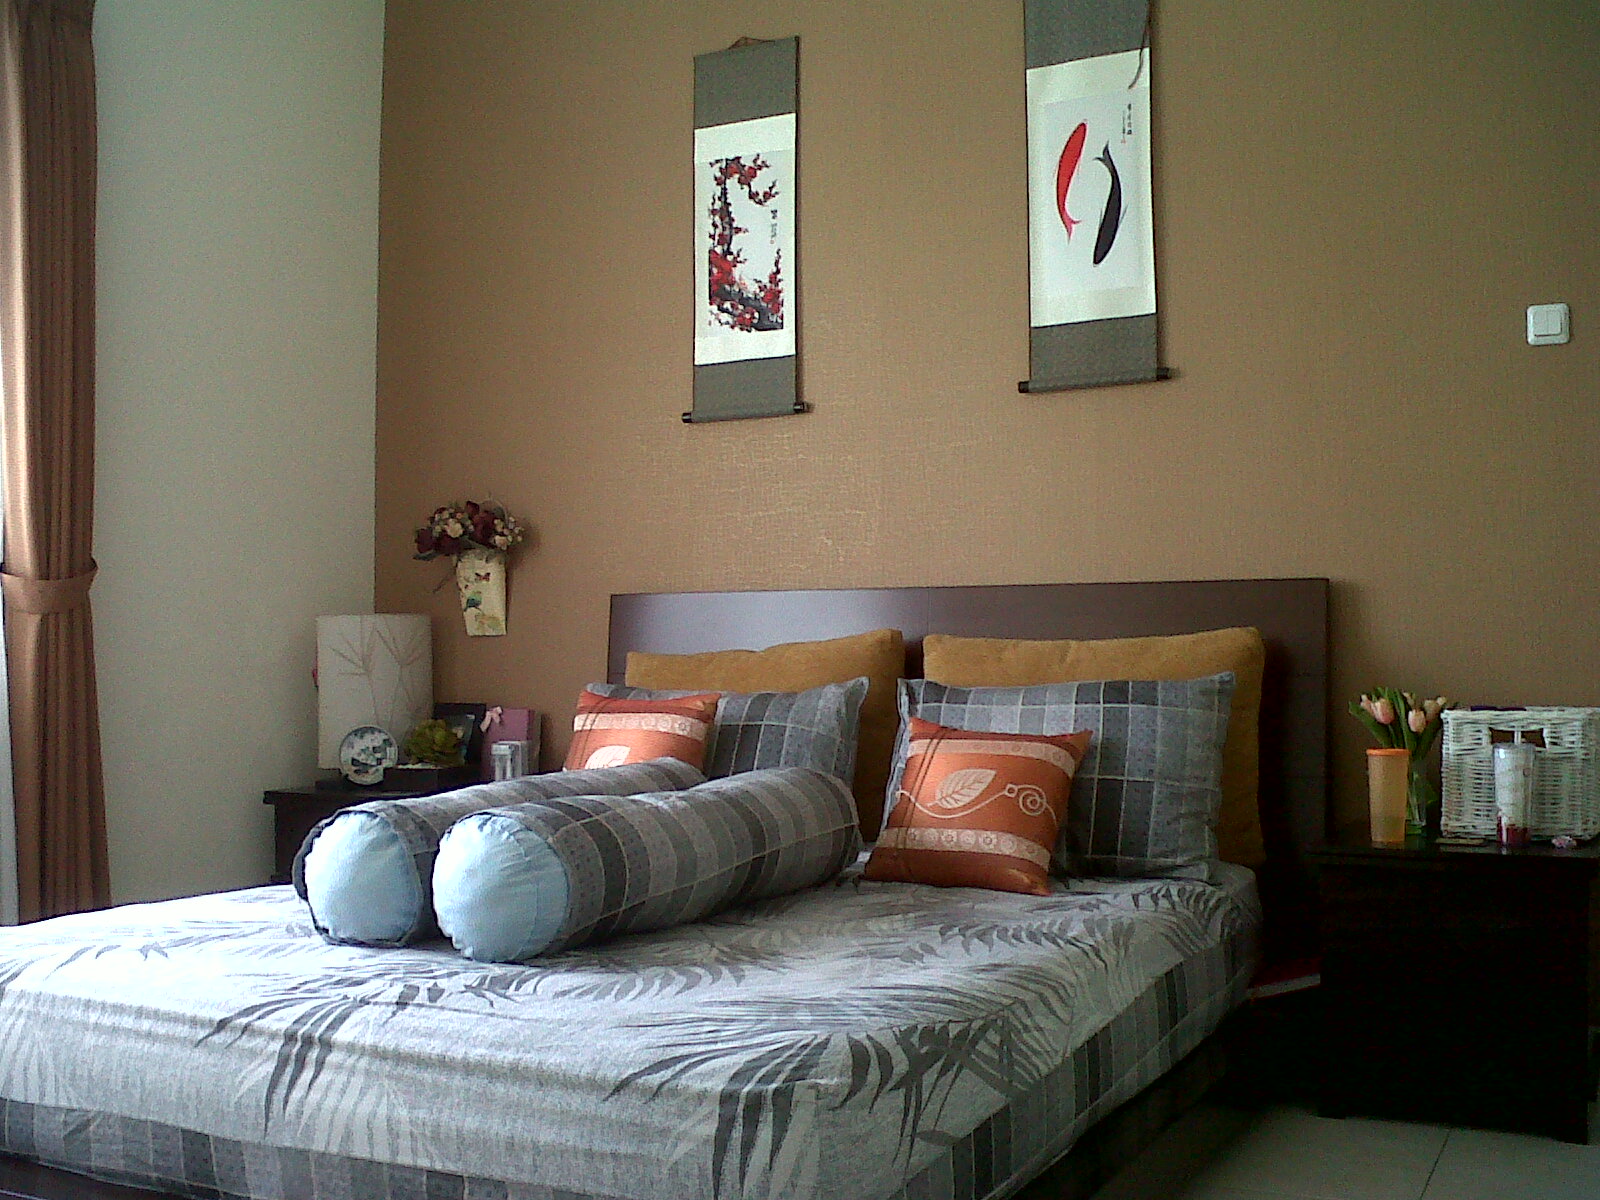 tapete warna coklat,schlafzimmer,möbel,bett,zimmer,eigentum